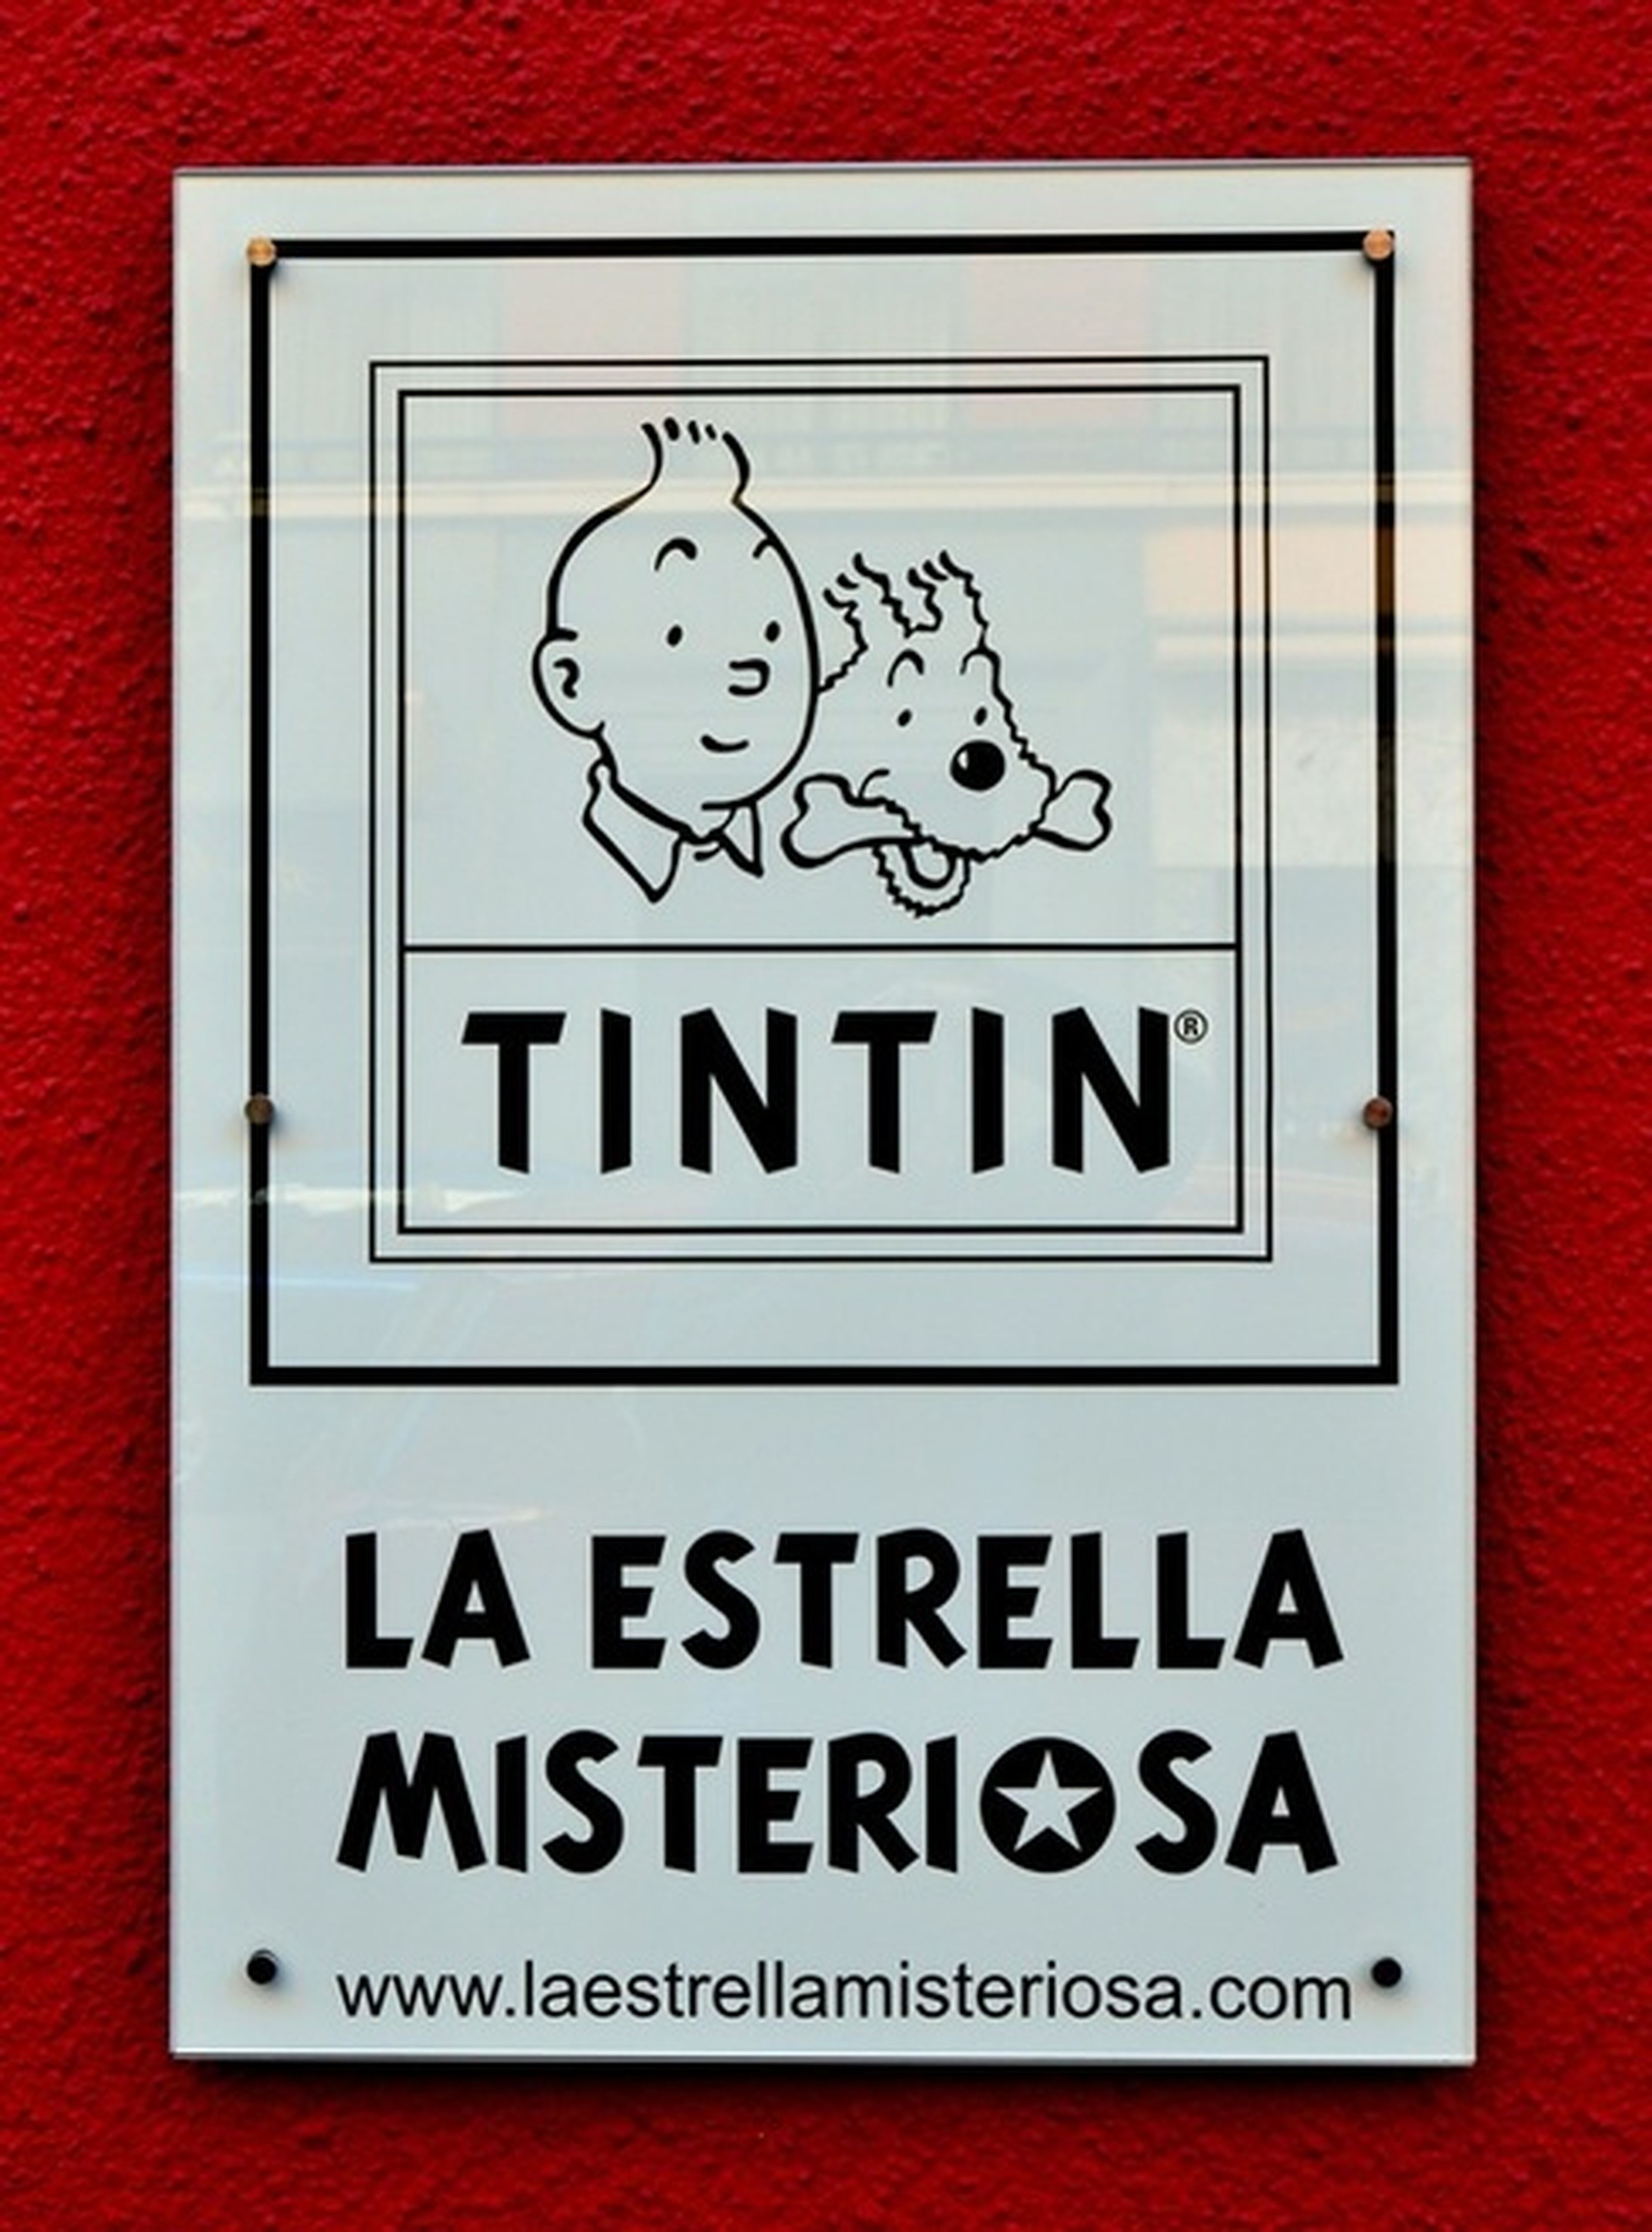 Nueva tienda de Tintín en Madrid